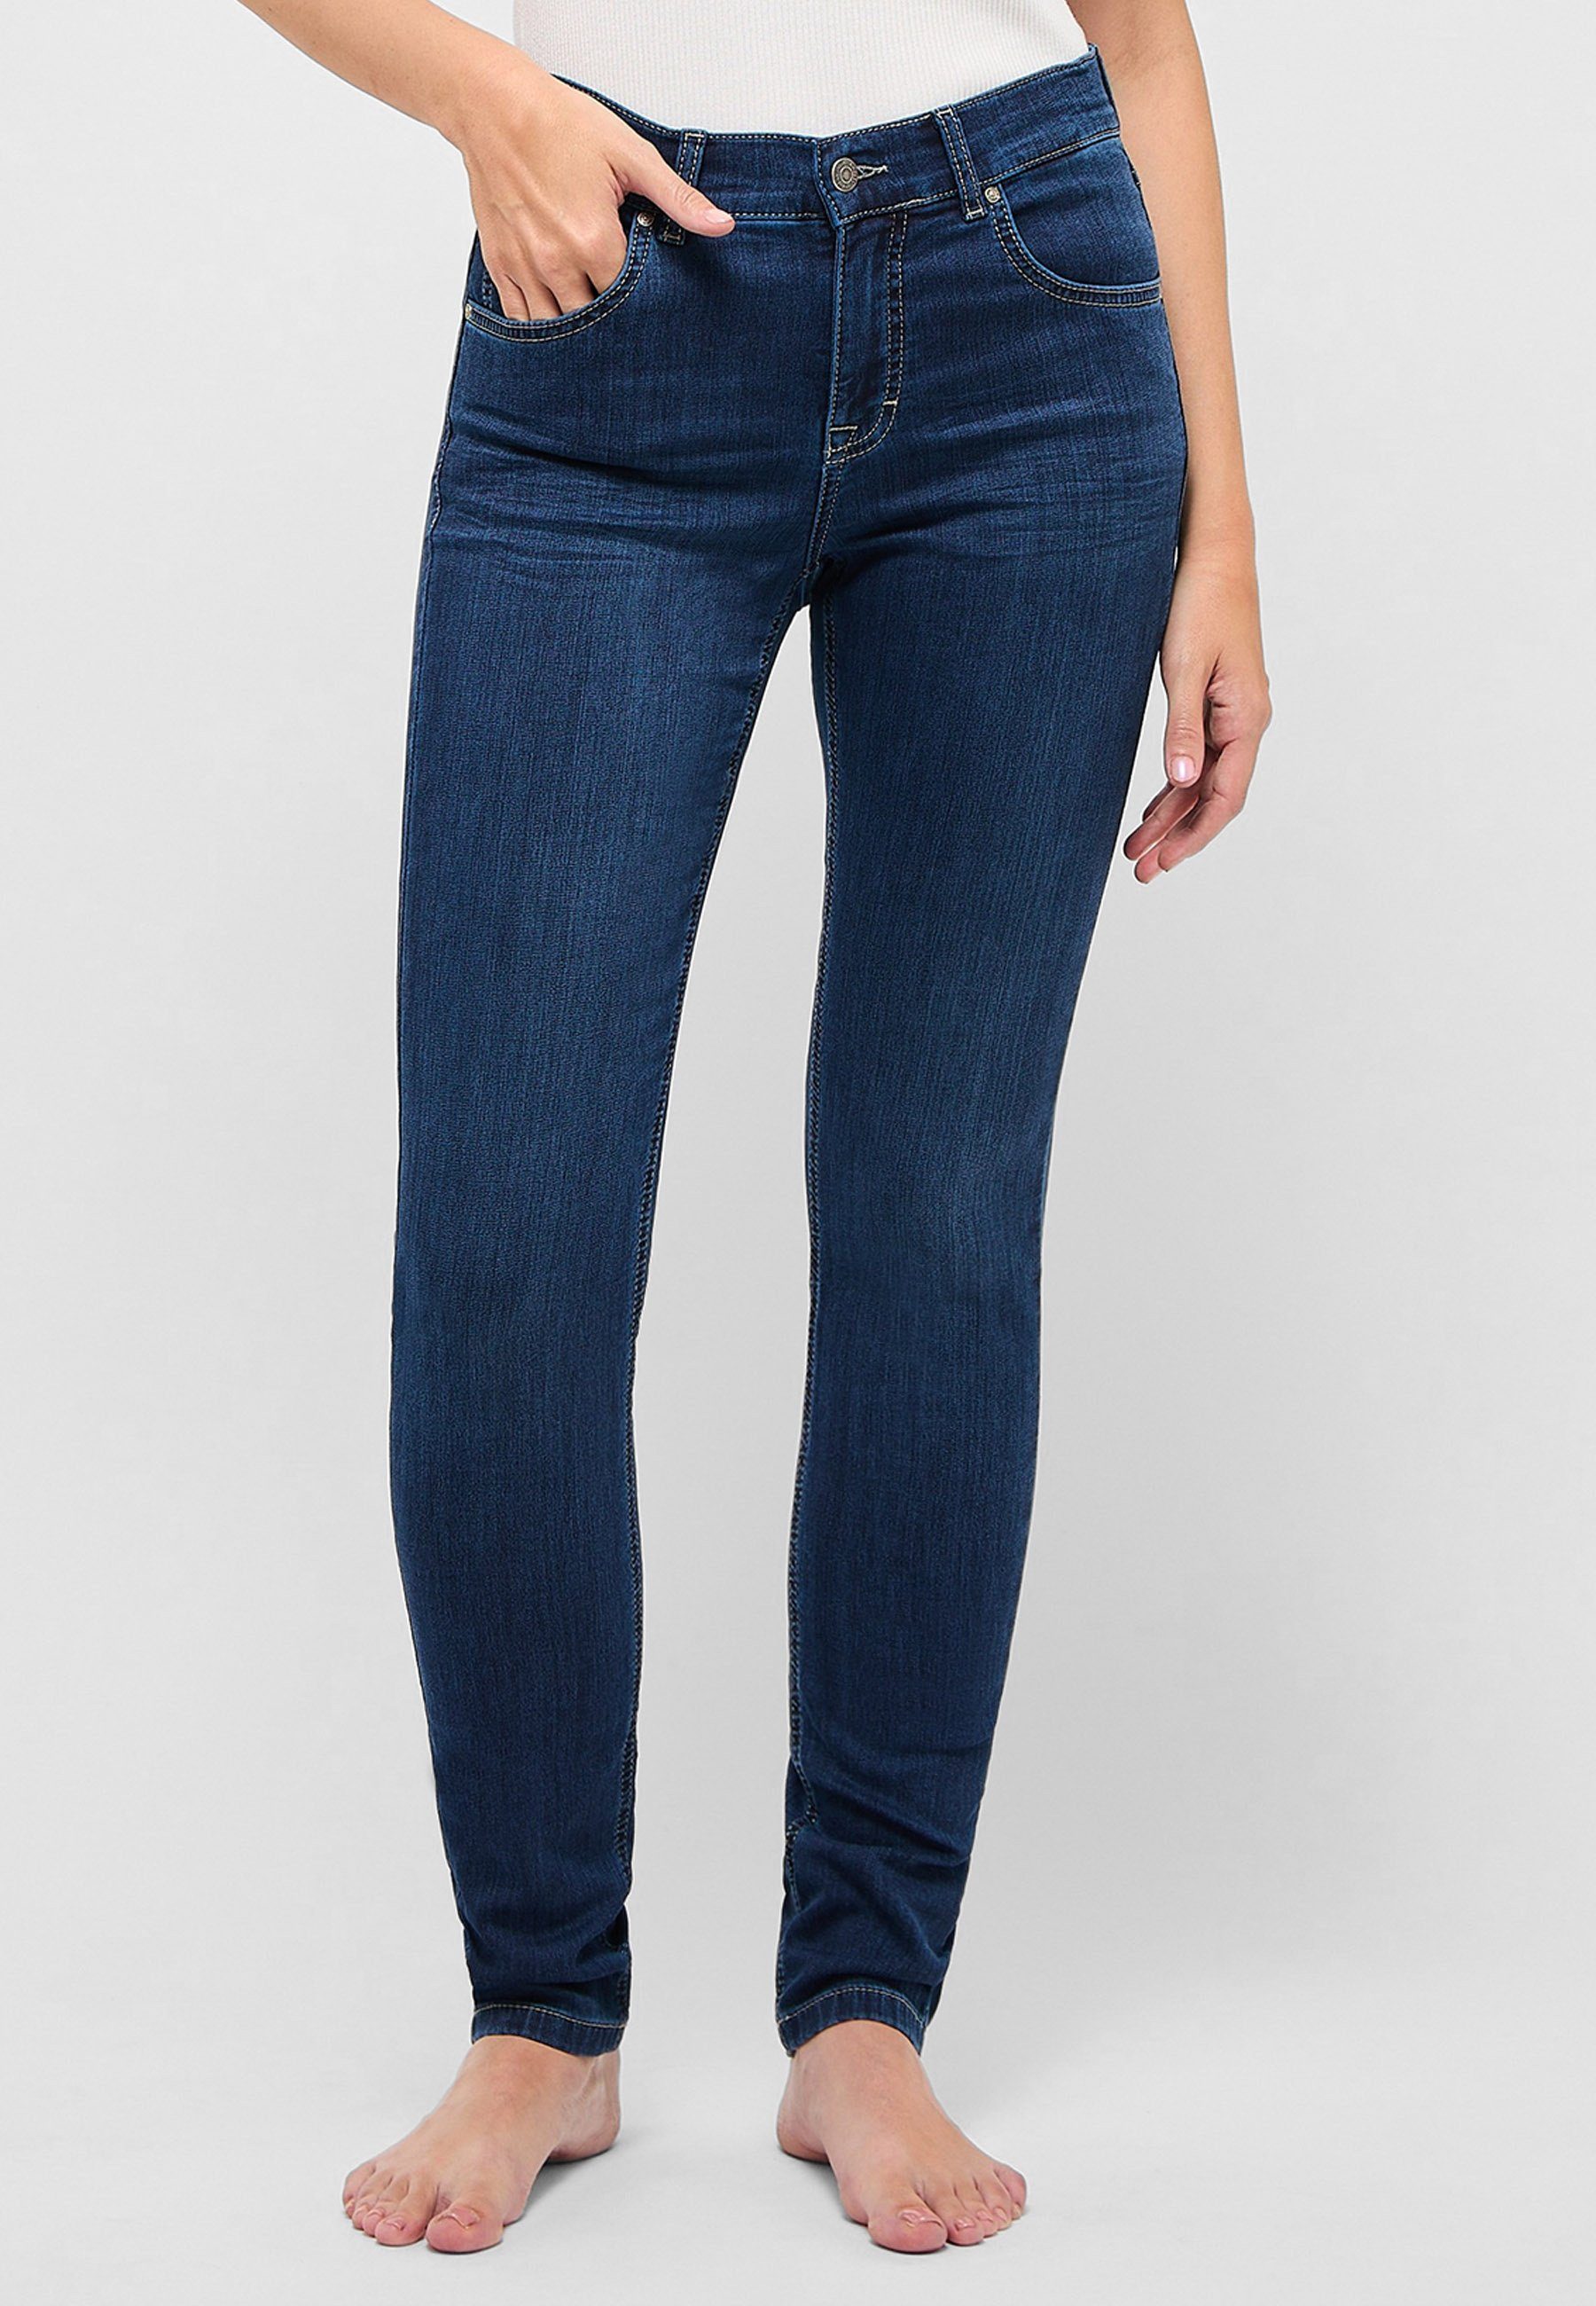 ANGELS Slim-fit-Jeans Skinny-fit-Jeans Skinny mit unifarbenem Stoff mit Label-Applikationen dunkelblau